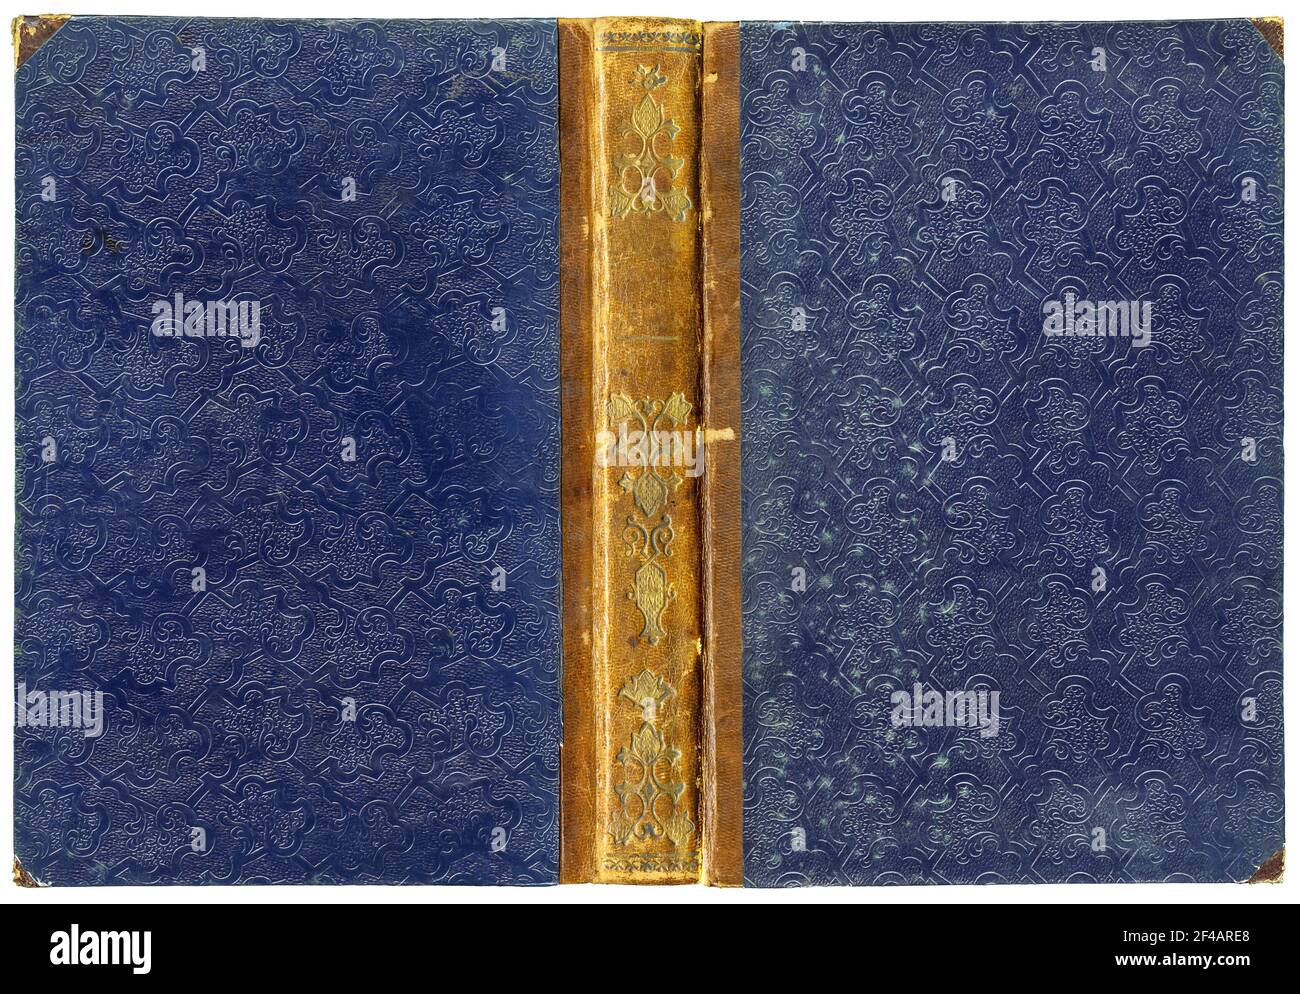 Vecchia copertina aperta con dorso in pelle, ornamenti floreali dorati e inusuale motivo in rilievo astratto su carta (circa 1850), isolata su bianco Foto Stock